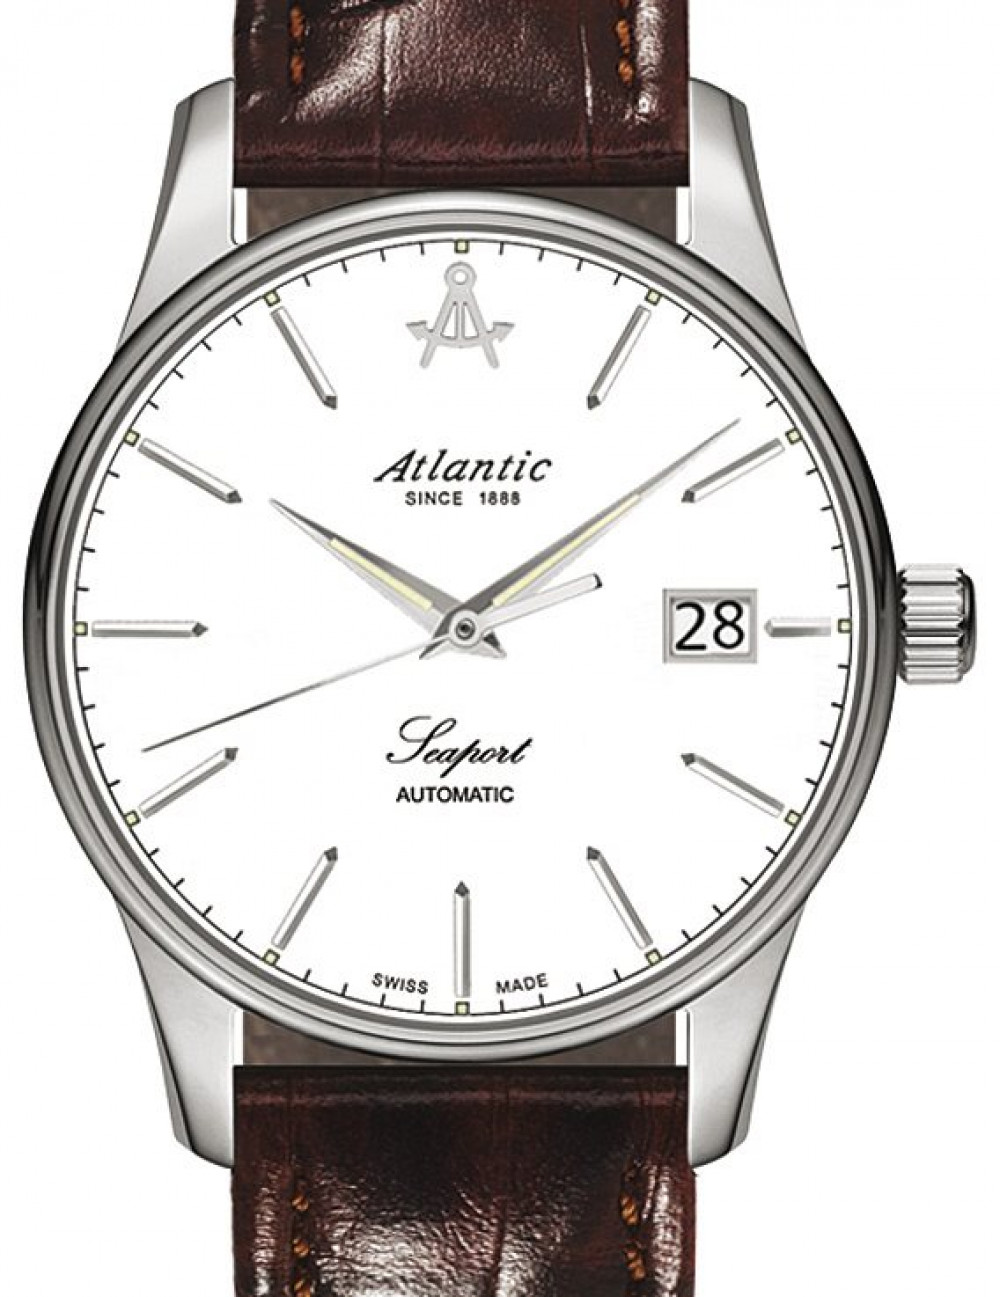 Zegarek firmy Atlantic, model Seaport